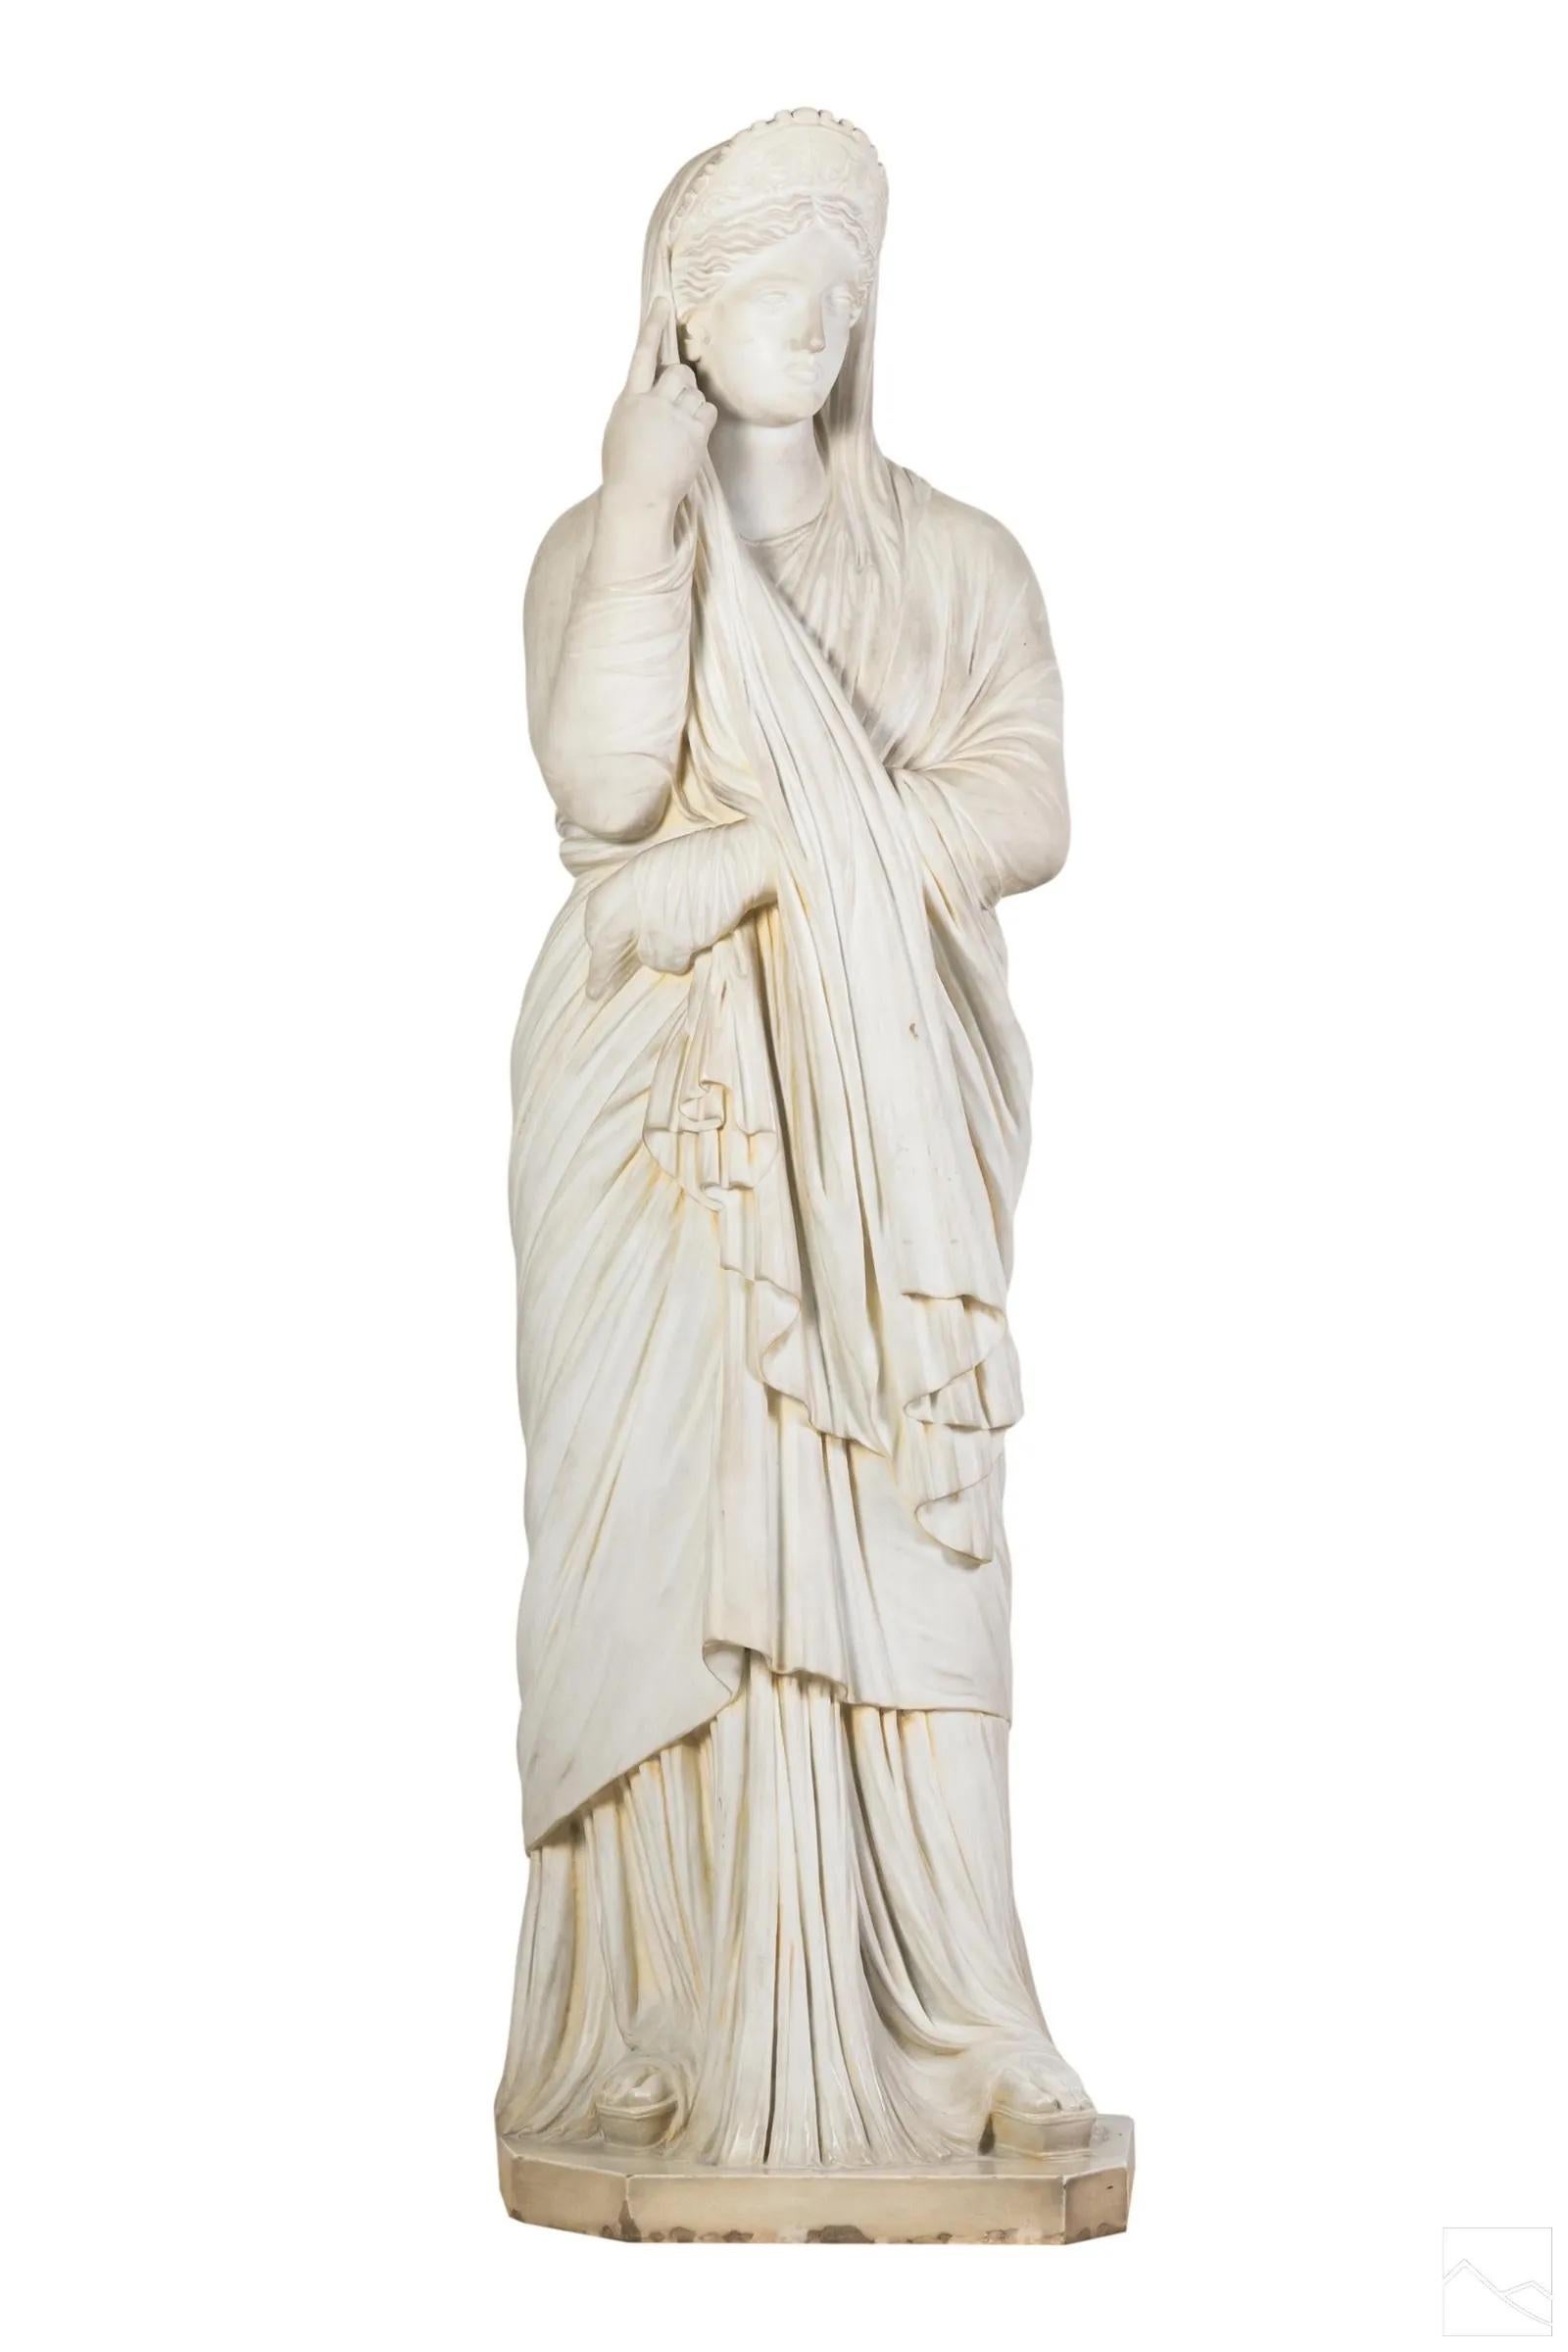 Statue en marbre sculpté de l'impératrice Livia Drusilla d'après l'antique. Une représentation fidèle de la statue classique de la première impératrice de Rome. 

Livia Drusilla (30 janvier 59 av. J.-C. - 28 septembre 29 ap. J.-C.) fut impératrice